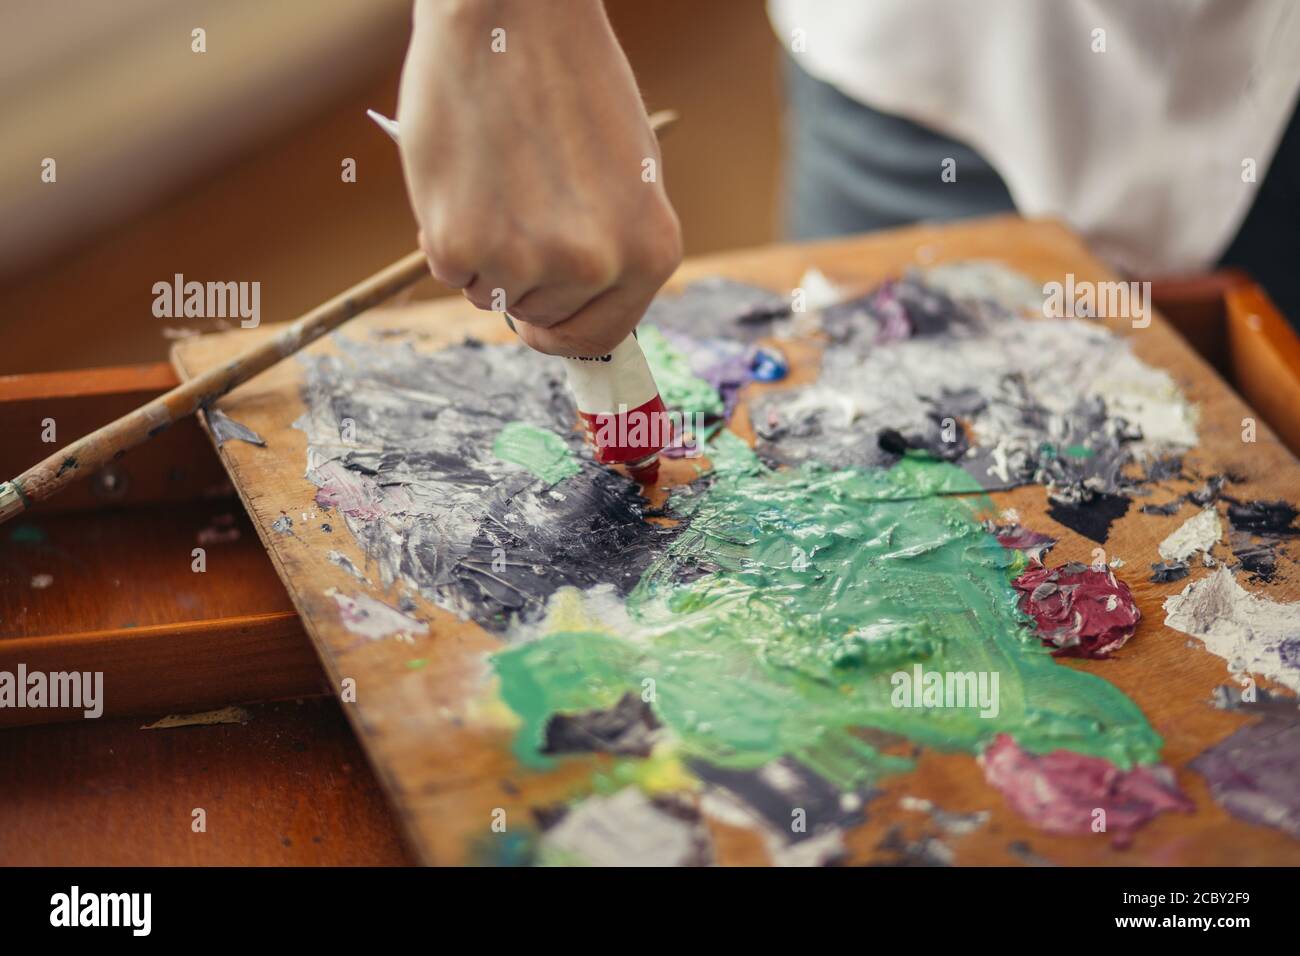 Männlicher Künstler hält Acryl-Farbtuben, mischt Farben für die Malerei auf Palette . Kunst, Kreativität, Hobby-Konzept. Nahaufnahme abgeschnitten Foto Stockfoto